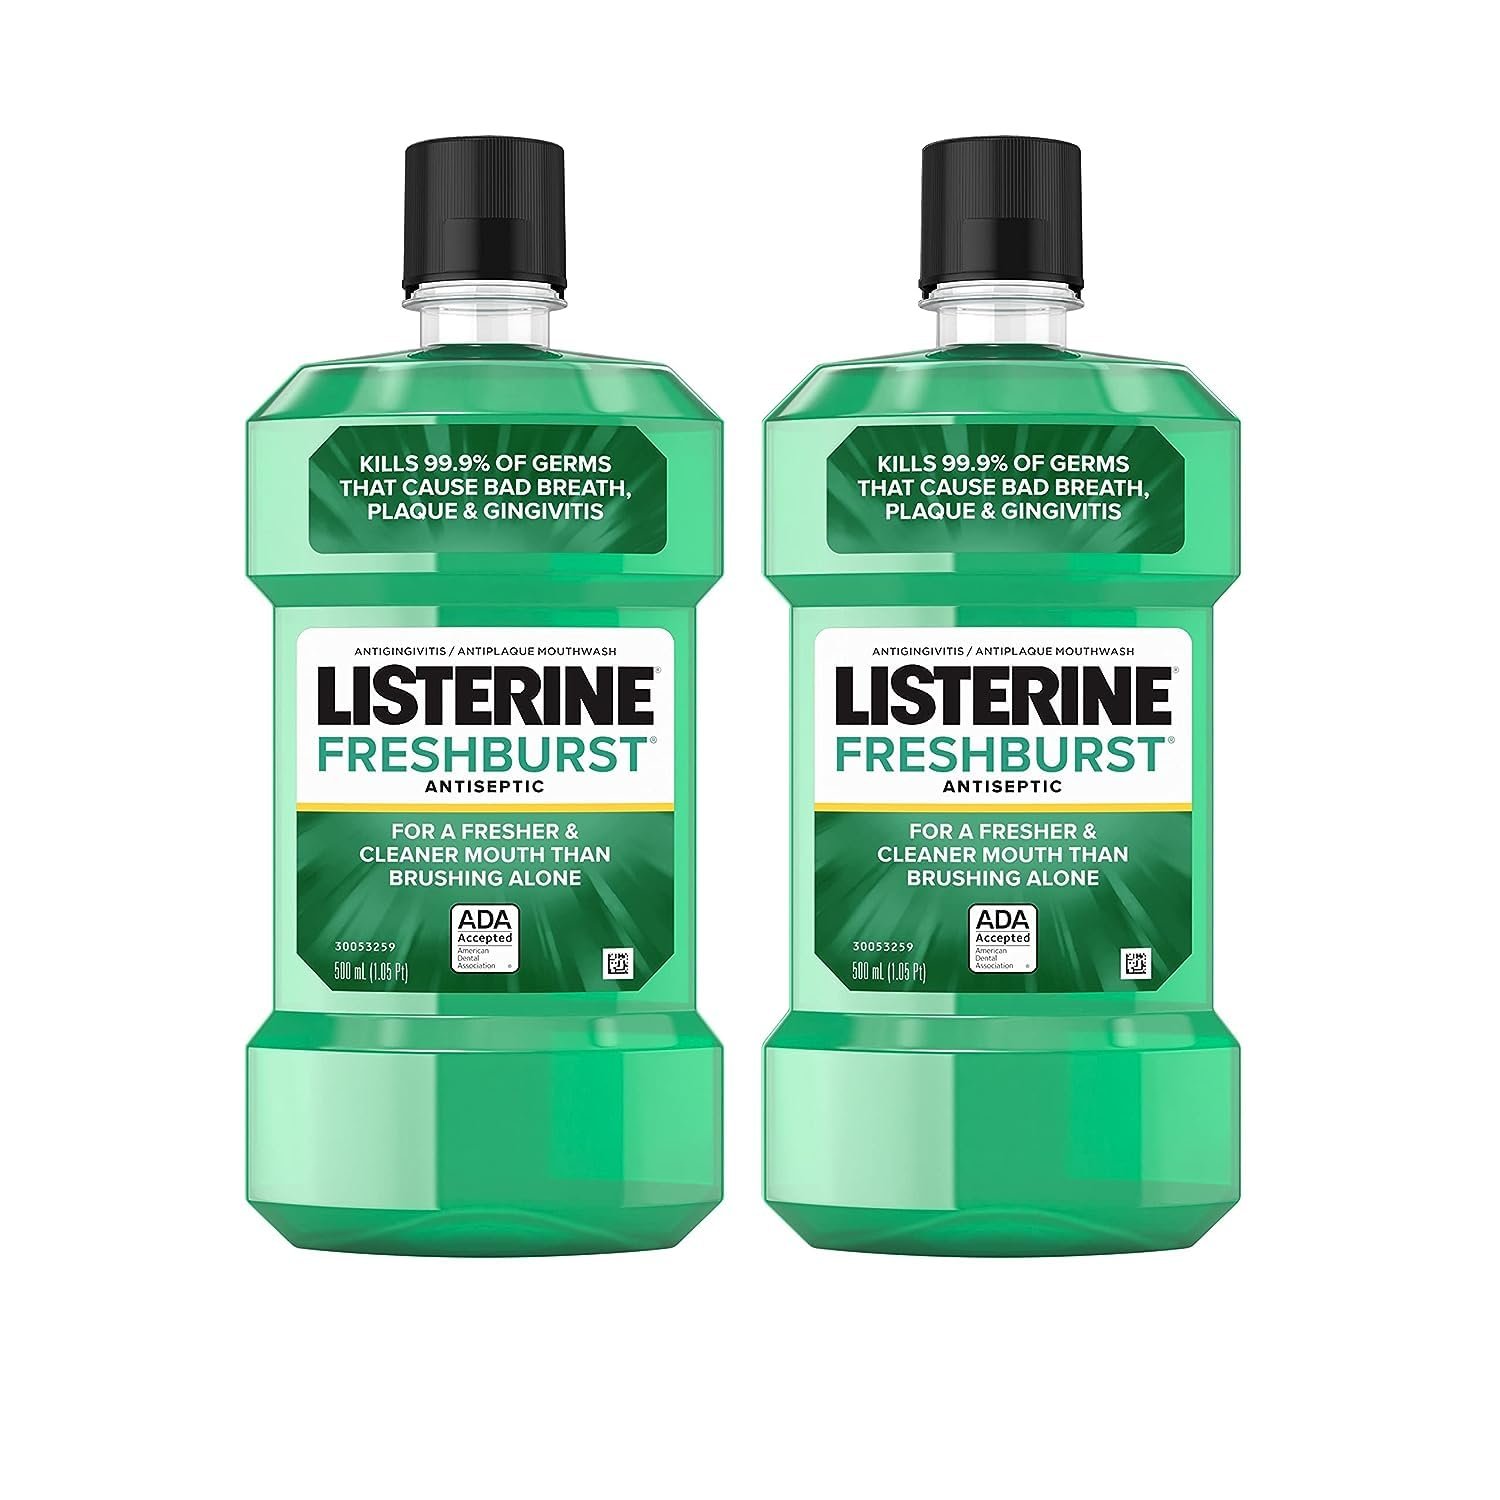 Listerine Freshburst Antiseptic Mouthwash for Bad Breath, 500 mL x 2 - image 1 of 8